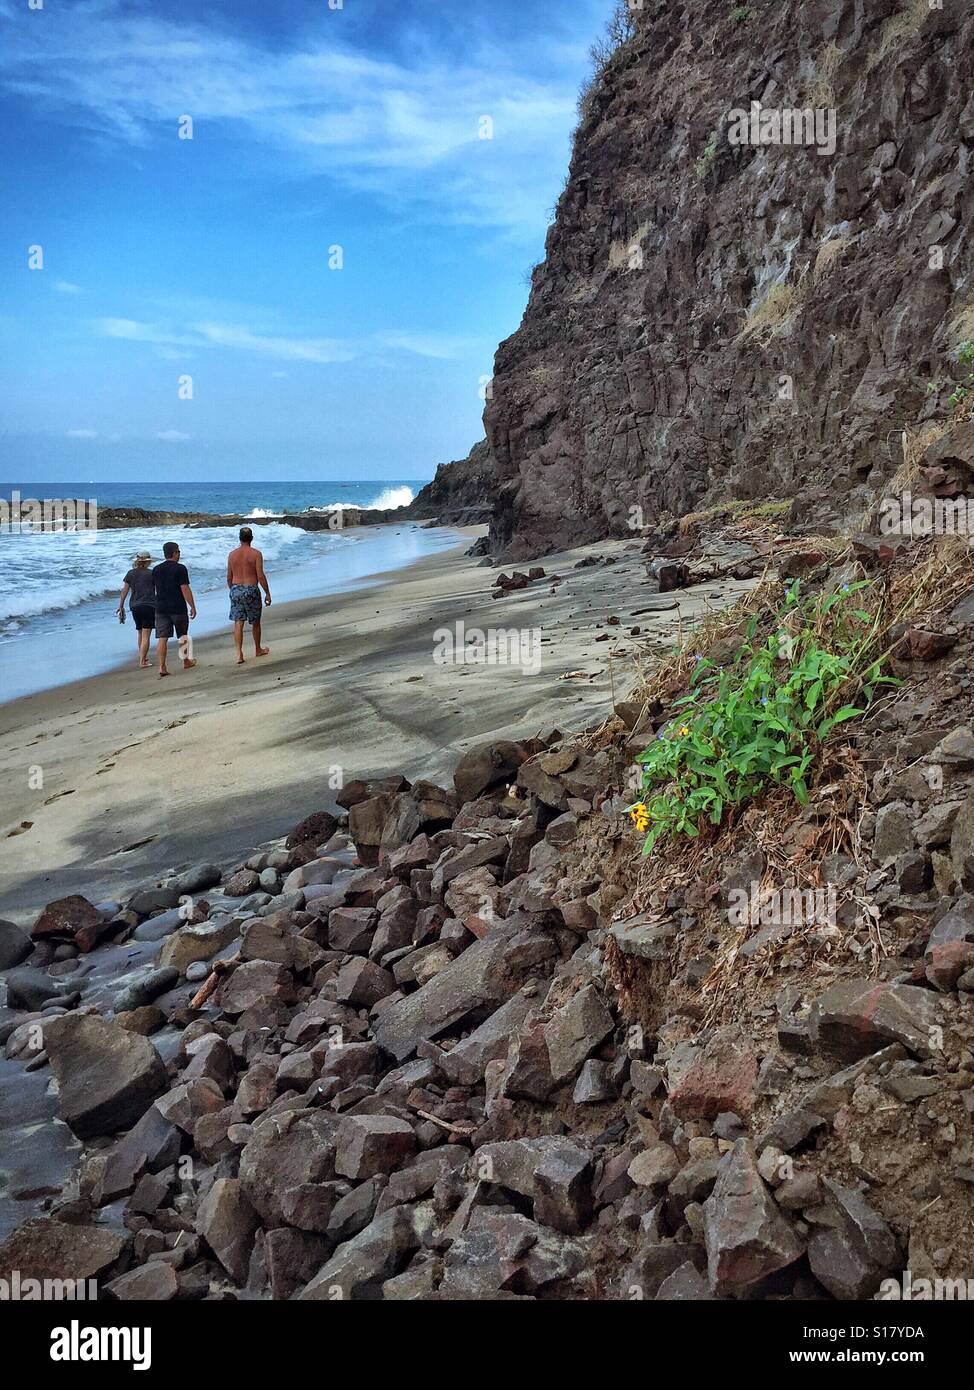 La gente camina en la playa junto a una ladera rocosa en Nayarit, México. Foto de stock